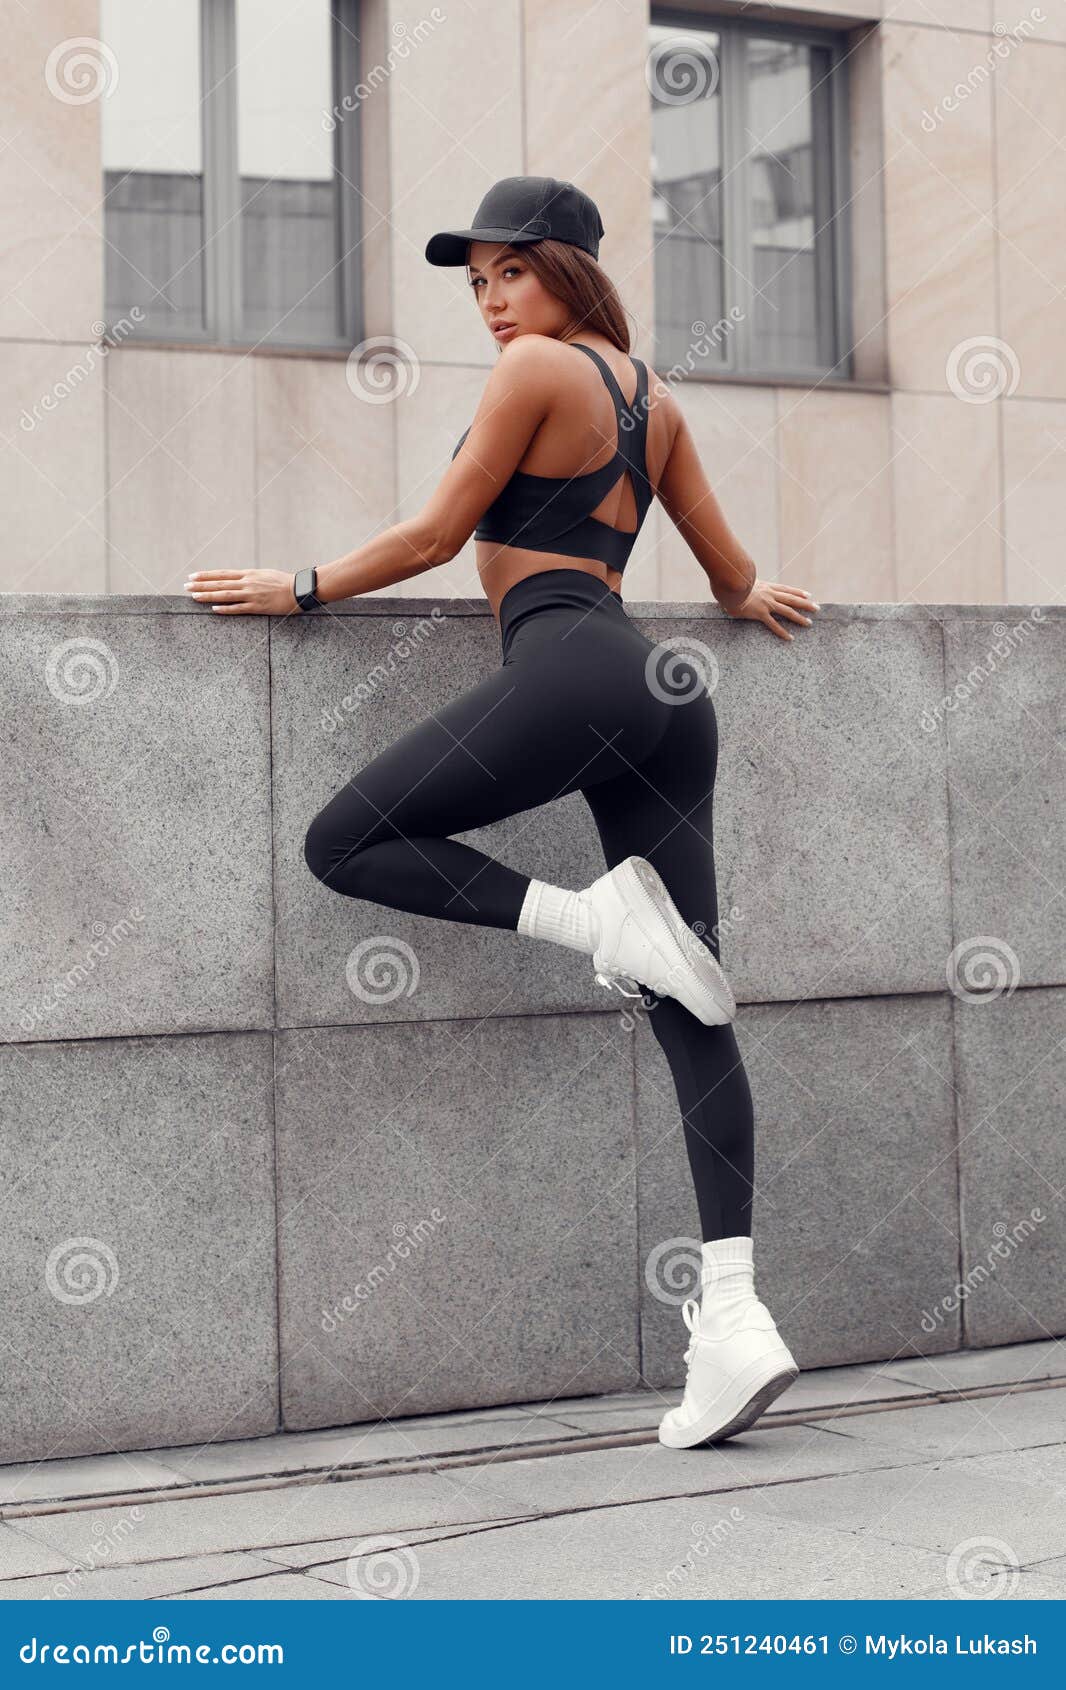 壁纸 : 体育, 妇女, 坐着, 健身模型, 杠铃, 肌肉, 截图, 人的立场, 拍照片, 身体素质, 表演艺术 5124x3744 ...